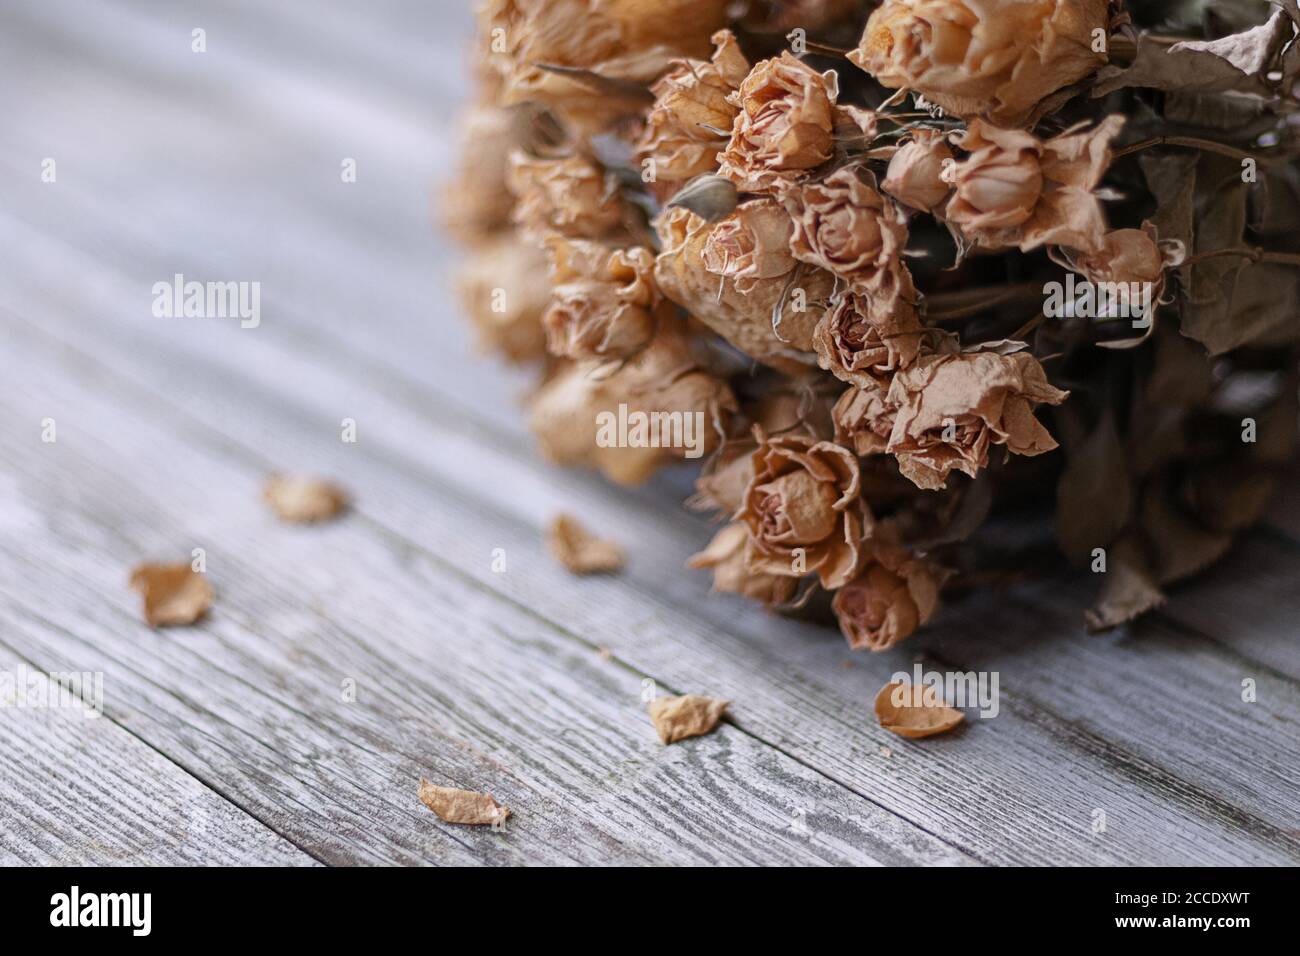 Mazzo di rose secche su tavola di legno, ricordi nostalgici del passato Foto Stock